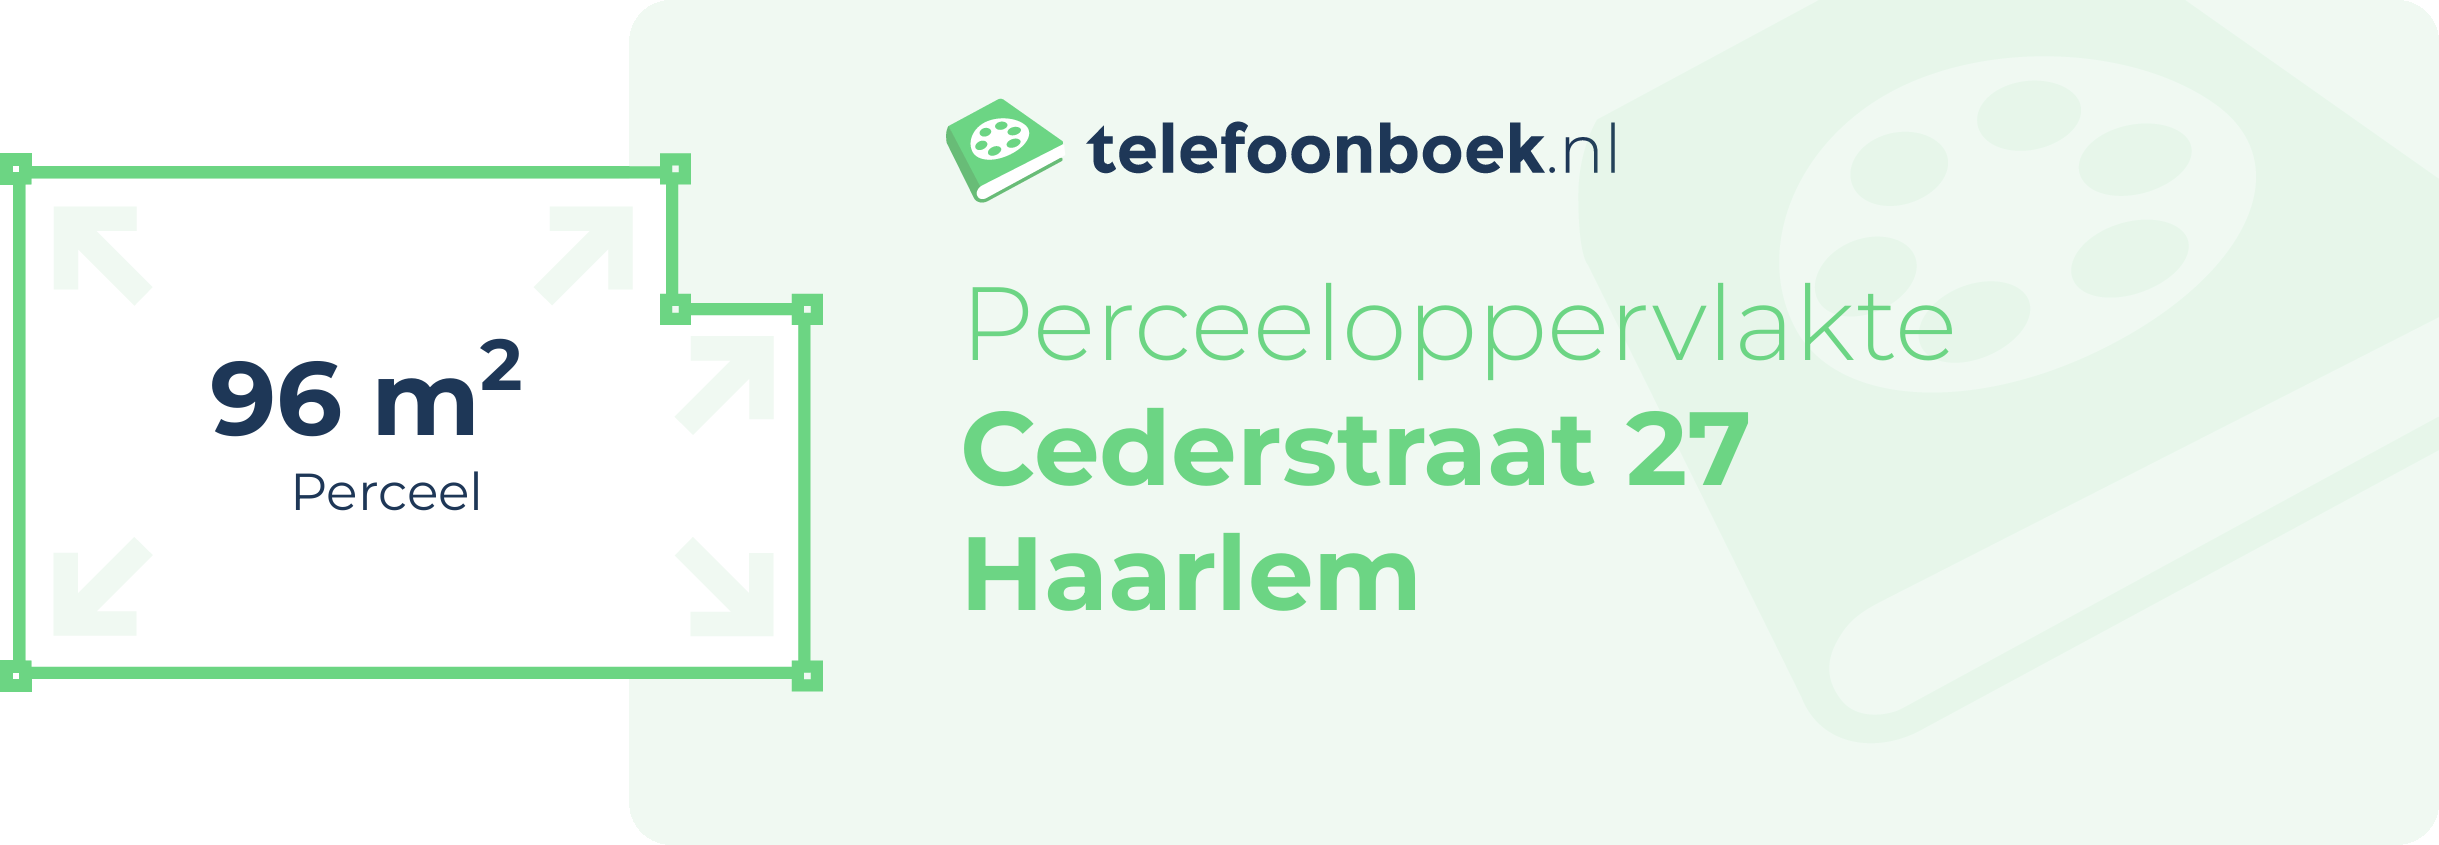 Perceeloppervlakte Cederstraat 27 Haarlem